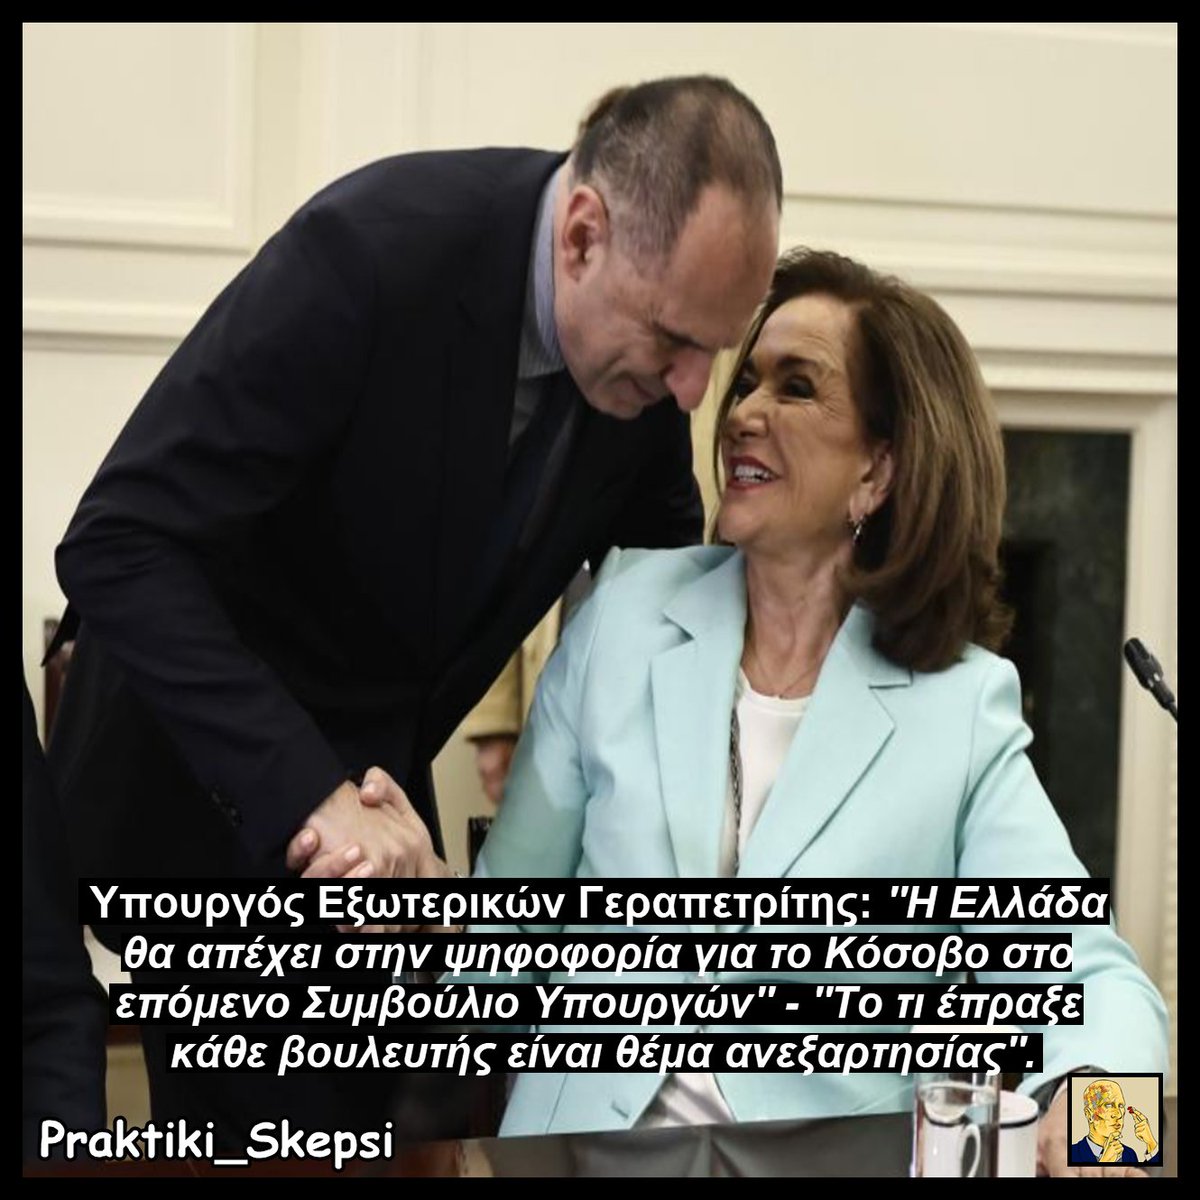 😒 Δηλαδή πρέπει να φτάσουμε στο αμήν σε αυτήν την χώρα, προκειμένου να αντιληφθούμε πως οι πράξεις μας έχουμε συνέπειες; Δεν υπάρχει συνεννόηση στο τι ψηφίζει το κάθε στέλεχος της κυβέρνησης διεθνώς και όλα είναι YOLO; 🇬🇷Για την Ελλάδα δεν υπάρχει 'Βόρεια Κύπρος', διότι είναι…